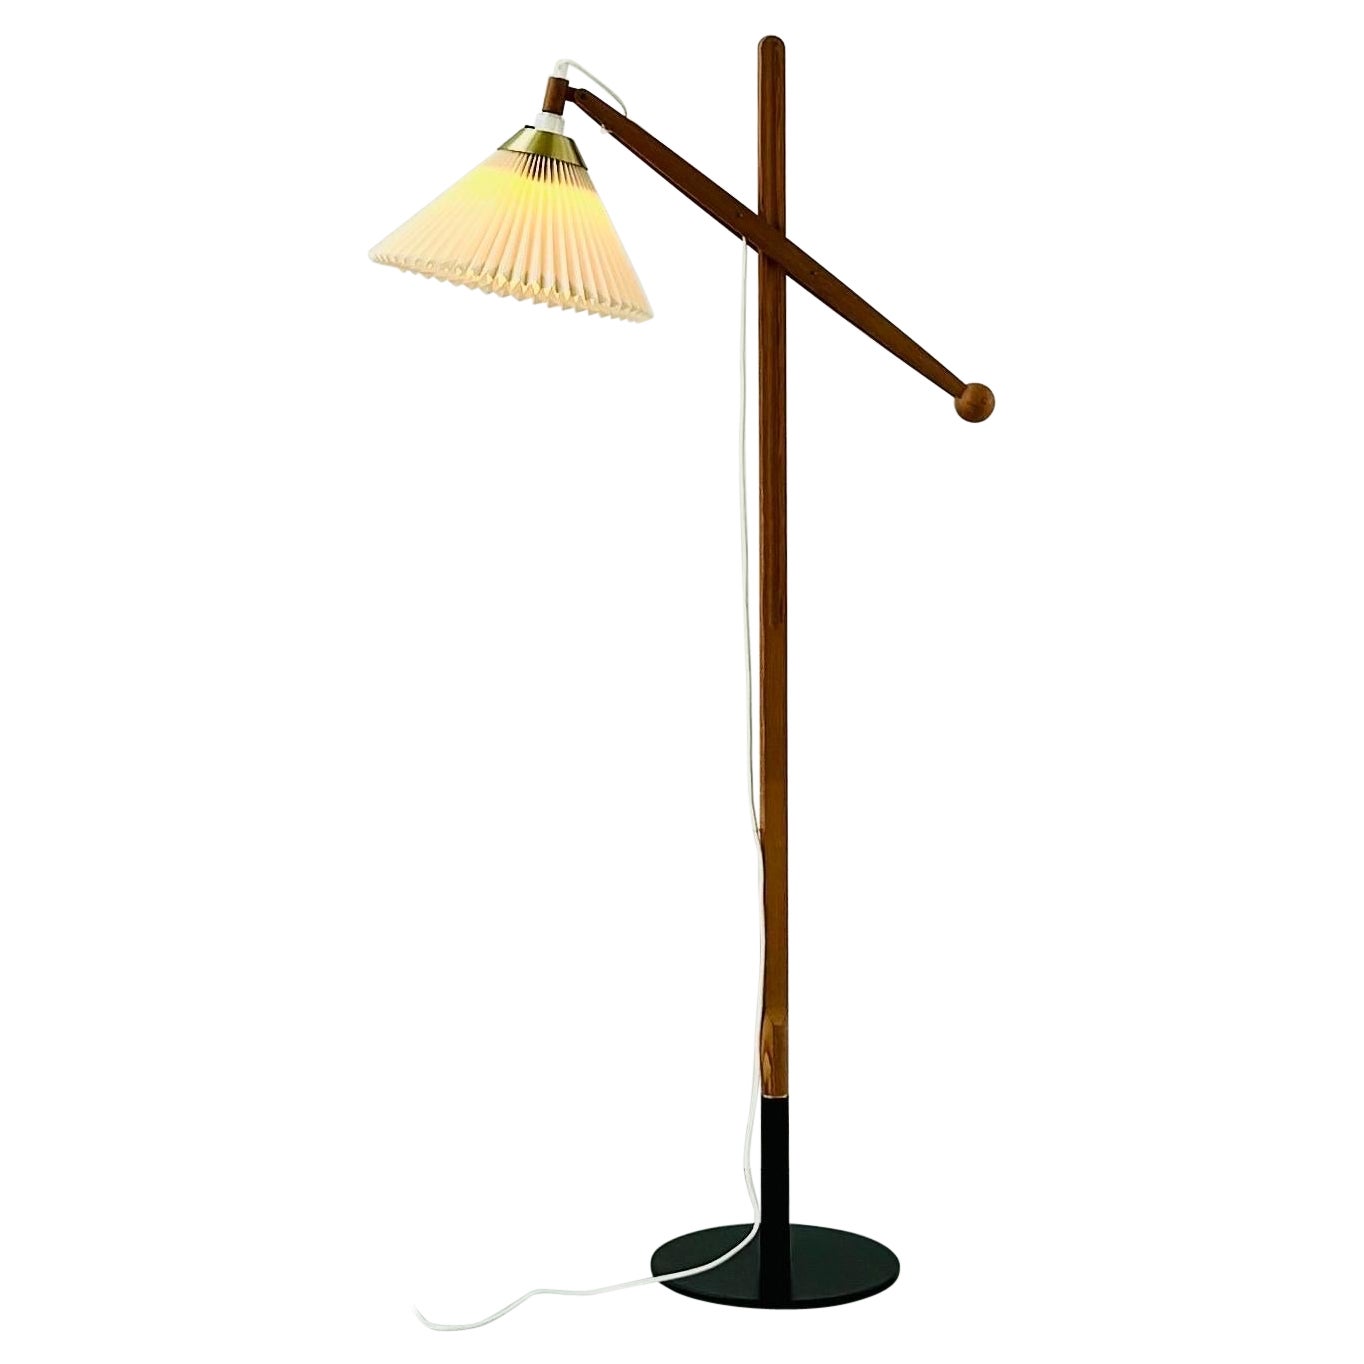 Danish Modern Le Klint Floor Lamp Designed by Vilhelm Wohlert, 1960s, Denmark For Sale